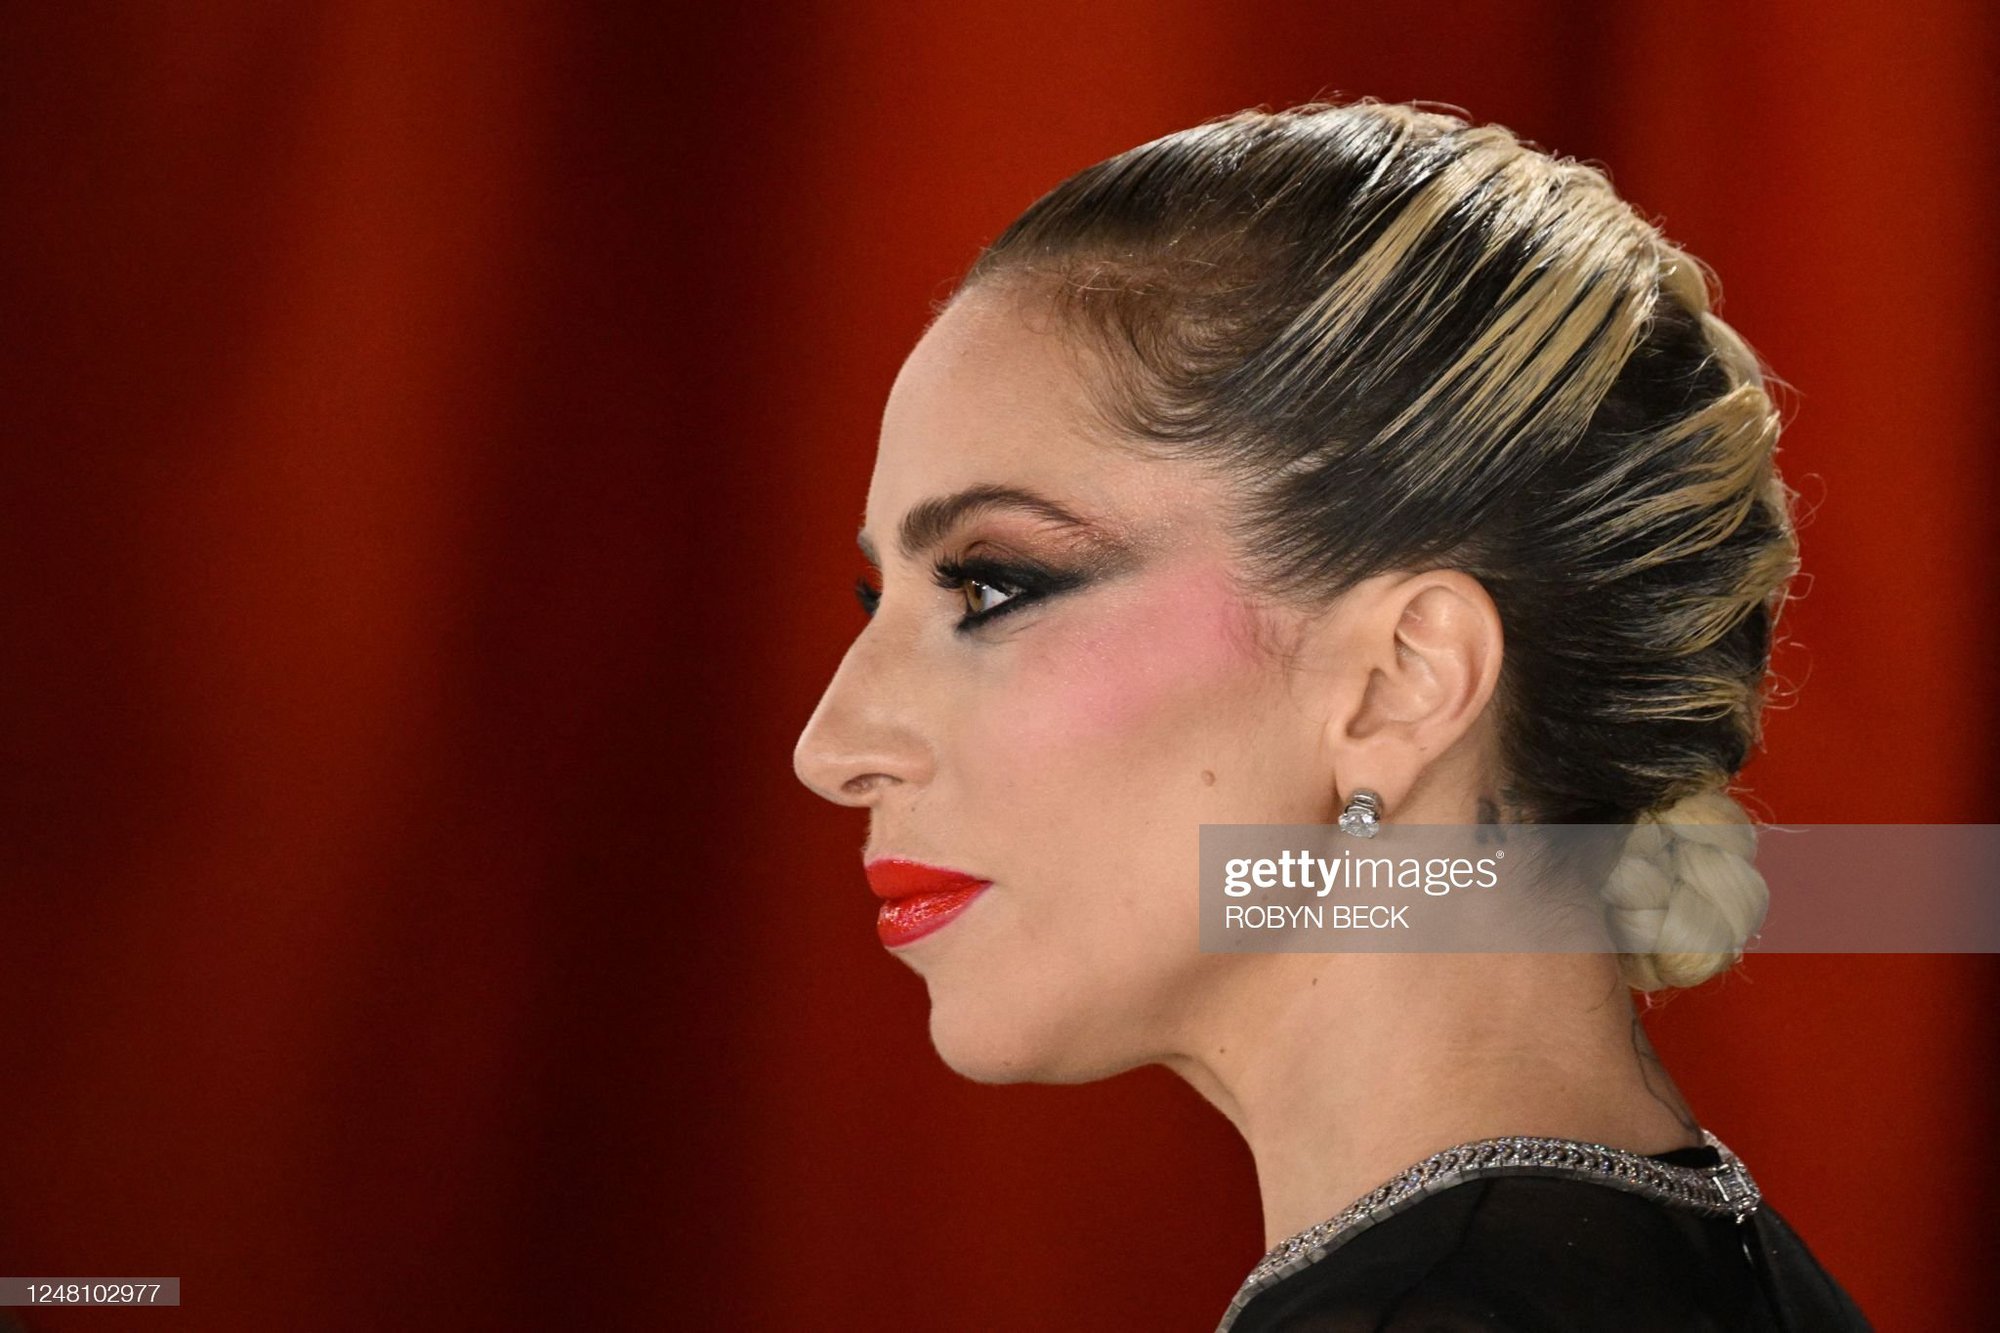 Mỹ nhân Oscar qua ống kính hung thần Getty Images: Phạm Băng Băng - Cara Delevingne đẹp phát choáng, Lady Gaga hóa thảm họa - Ảnh 12.